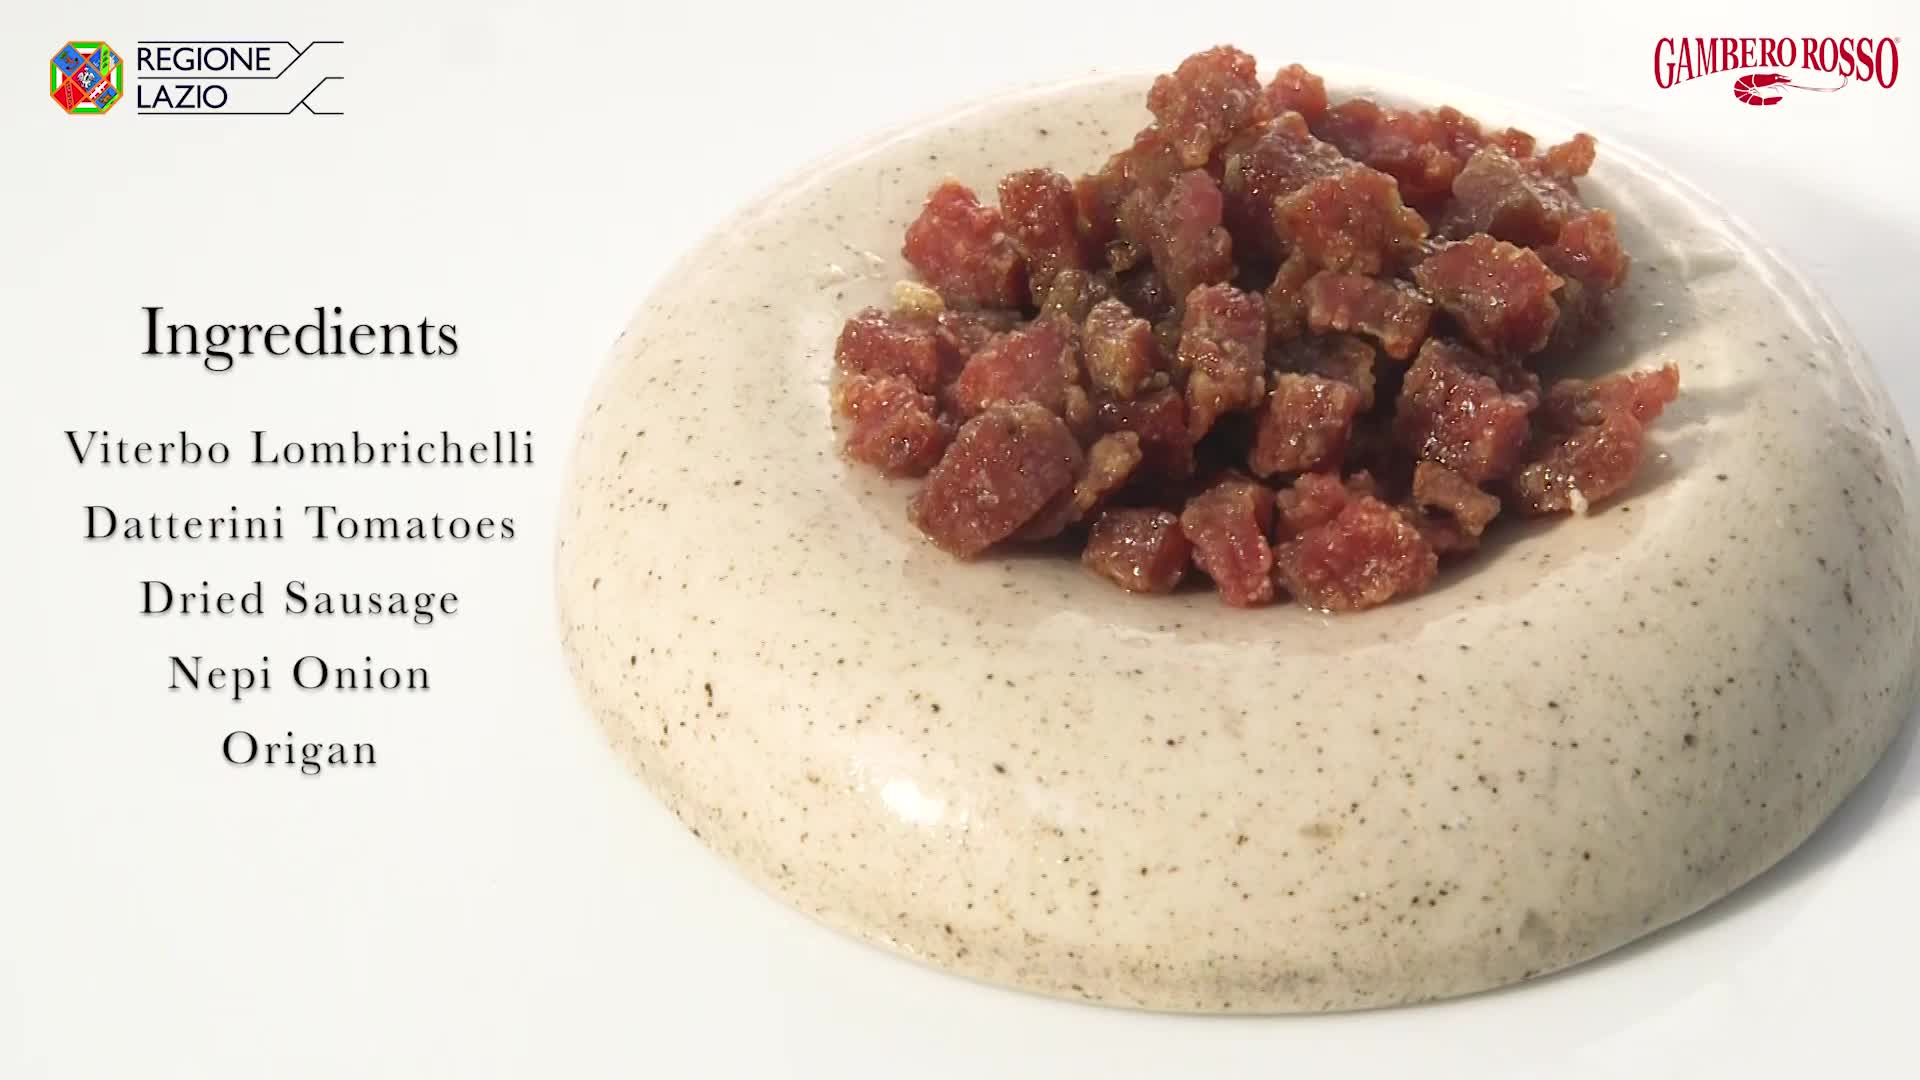 Lombrichelli pasta alla viterbese recipe - Video Gambero Rosso TV